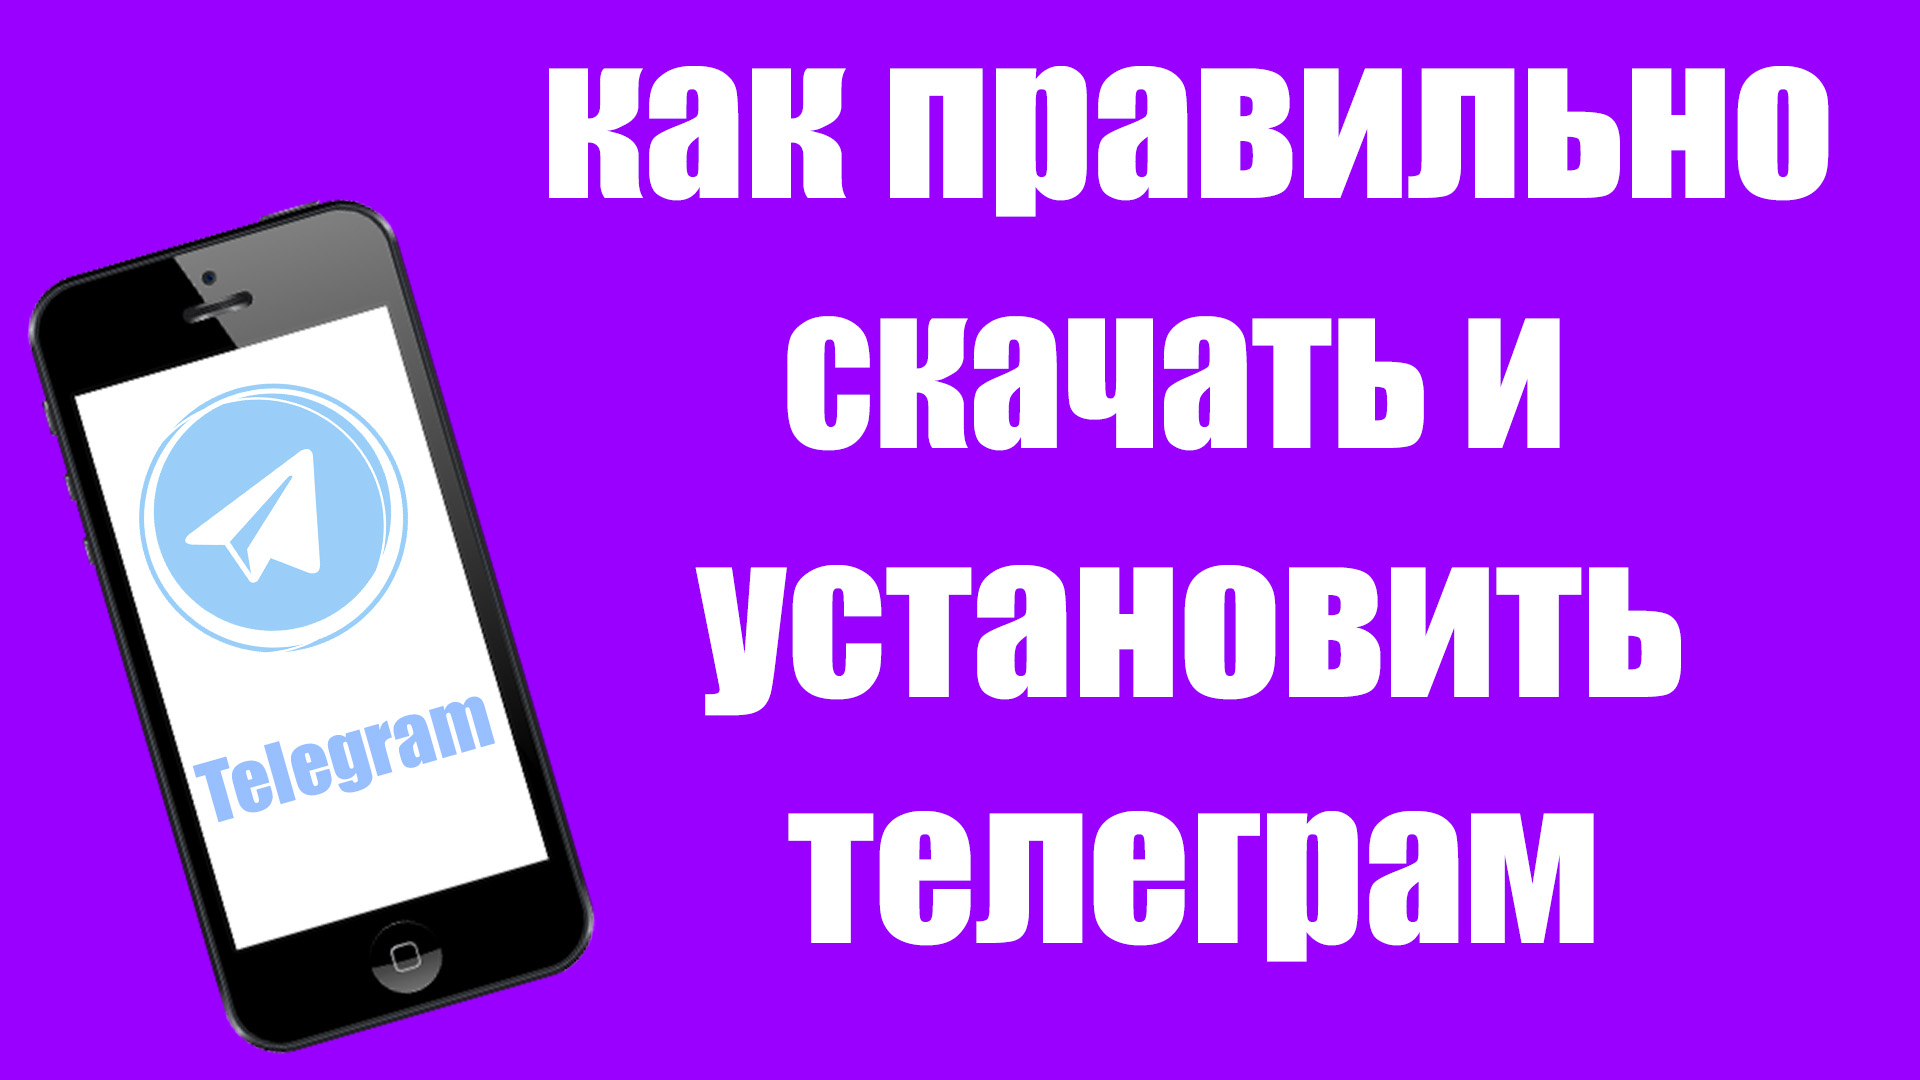 Как установить телеграмм на телефон пошагово на русском языке бесплатно для чайников фото 69